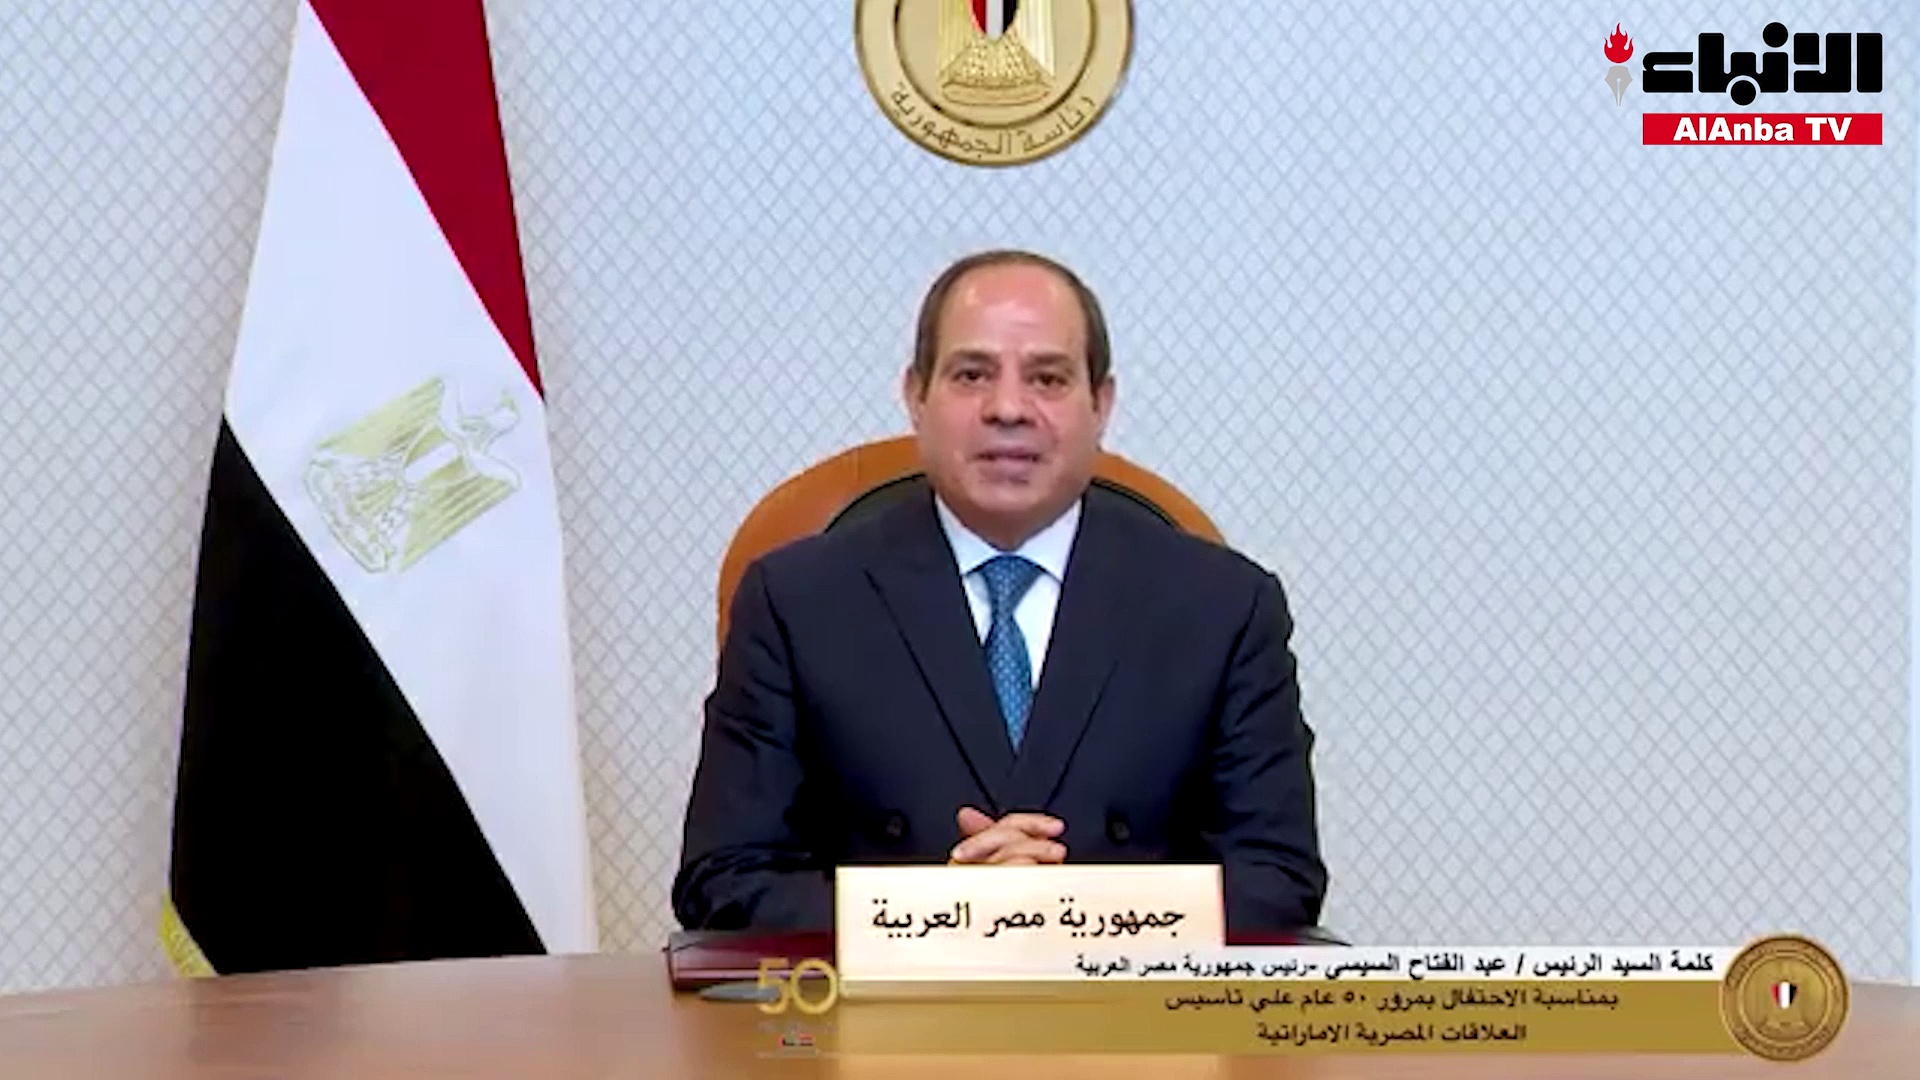 الرئيس عبدالفتاح السيسي يلقي كلمة بمناسبة مرور 50 عاما على العلاقات المصرية - الإماراتية